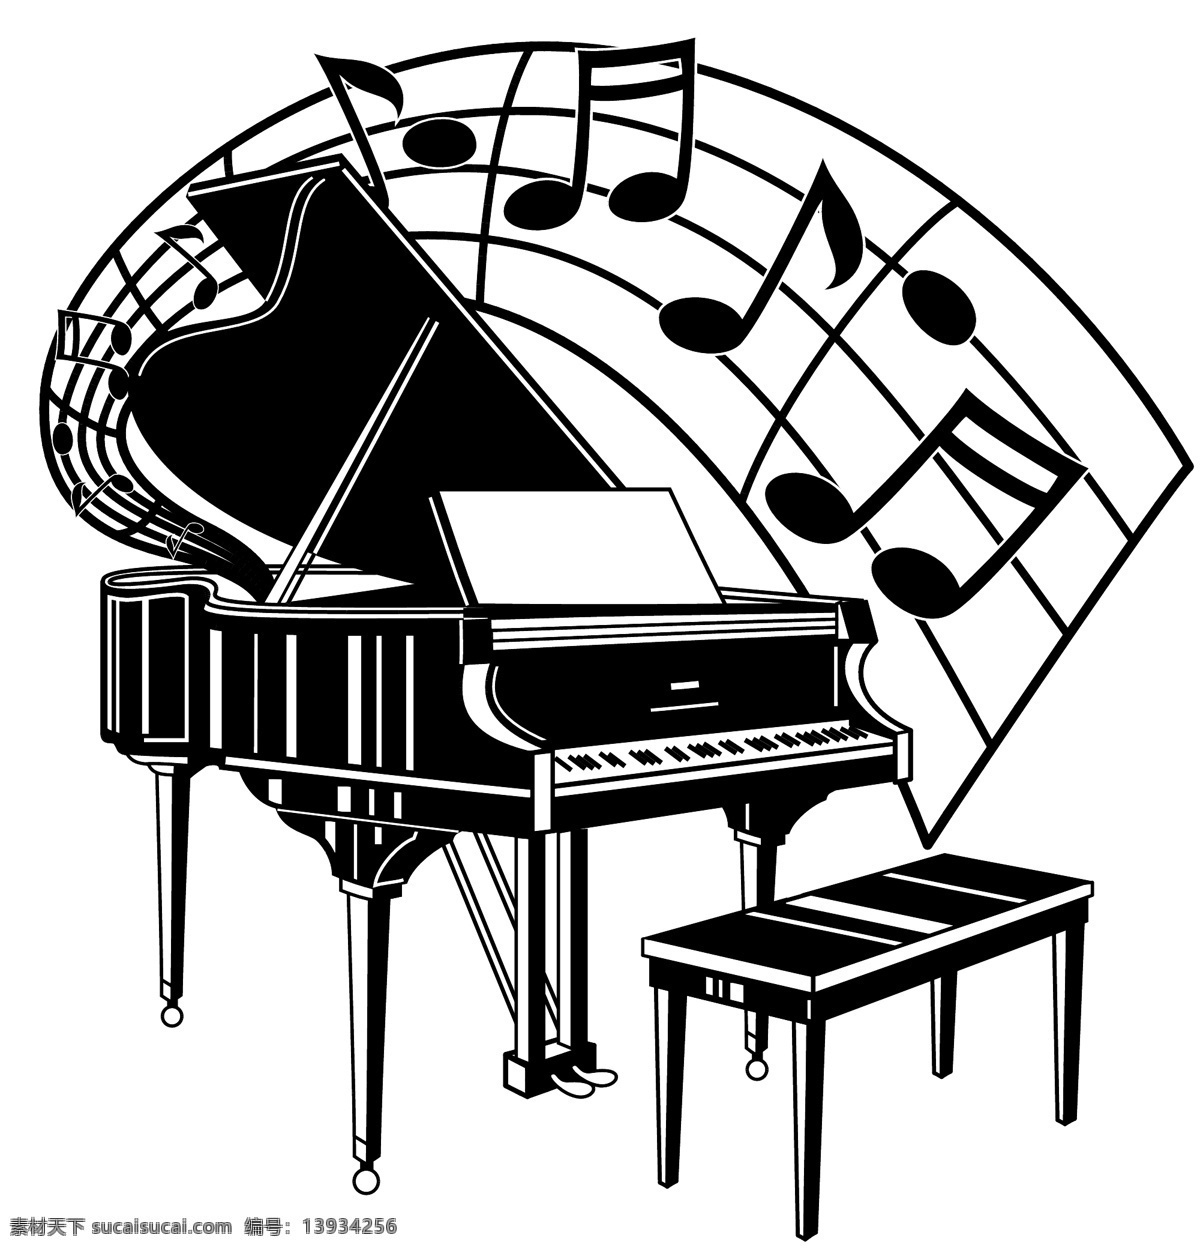 音乐素材 卡通 漫画 乐器 钢琴 二 舞蹈音乐 文化艺术 矢量